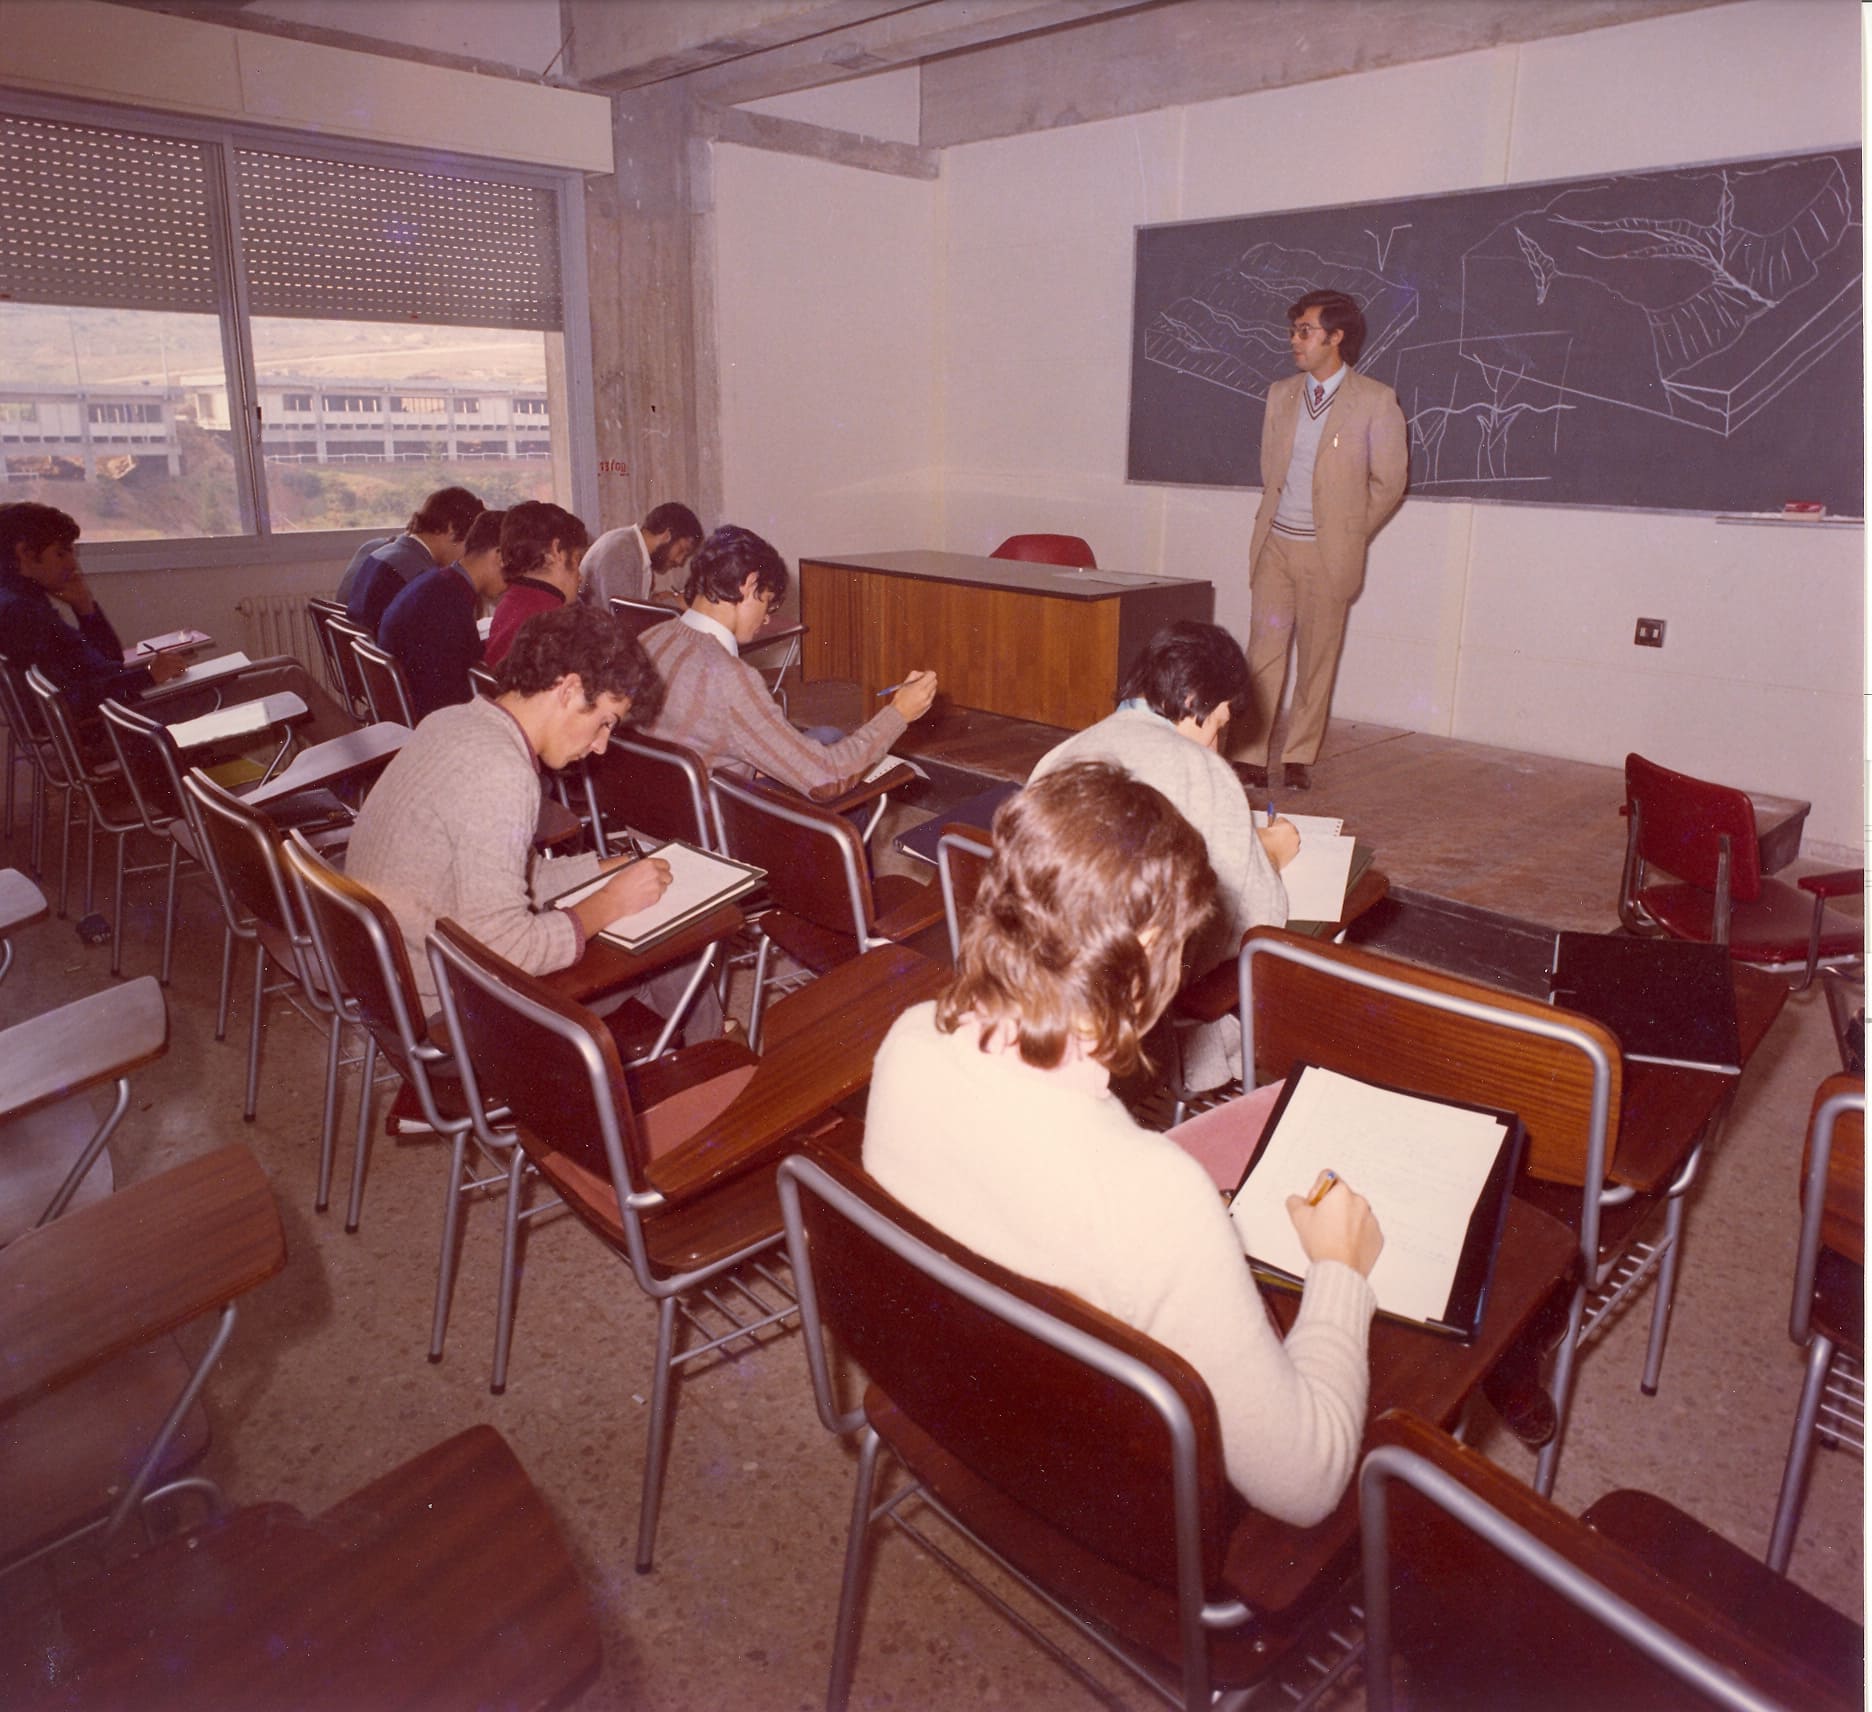 Vista de l'interior de la Facultat de Ci�ncies (edifici C). Estudiants durant una classe.  Desconegut  /  01-01-1971  /  Arxiu General i Registre de la Universitat Auton�ma de Barcelona